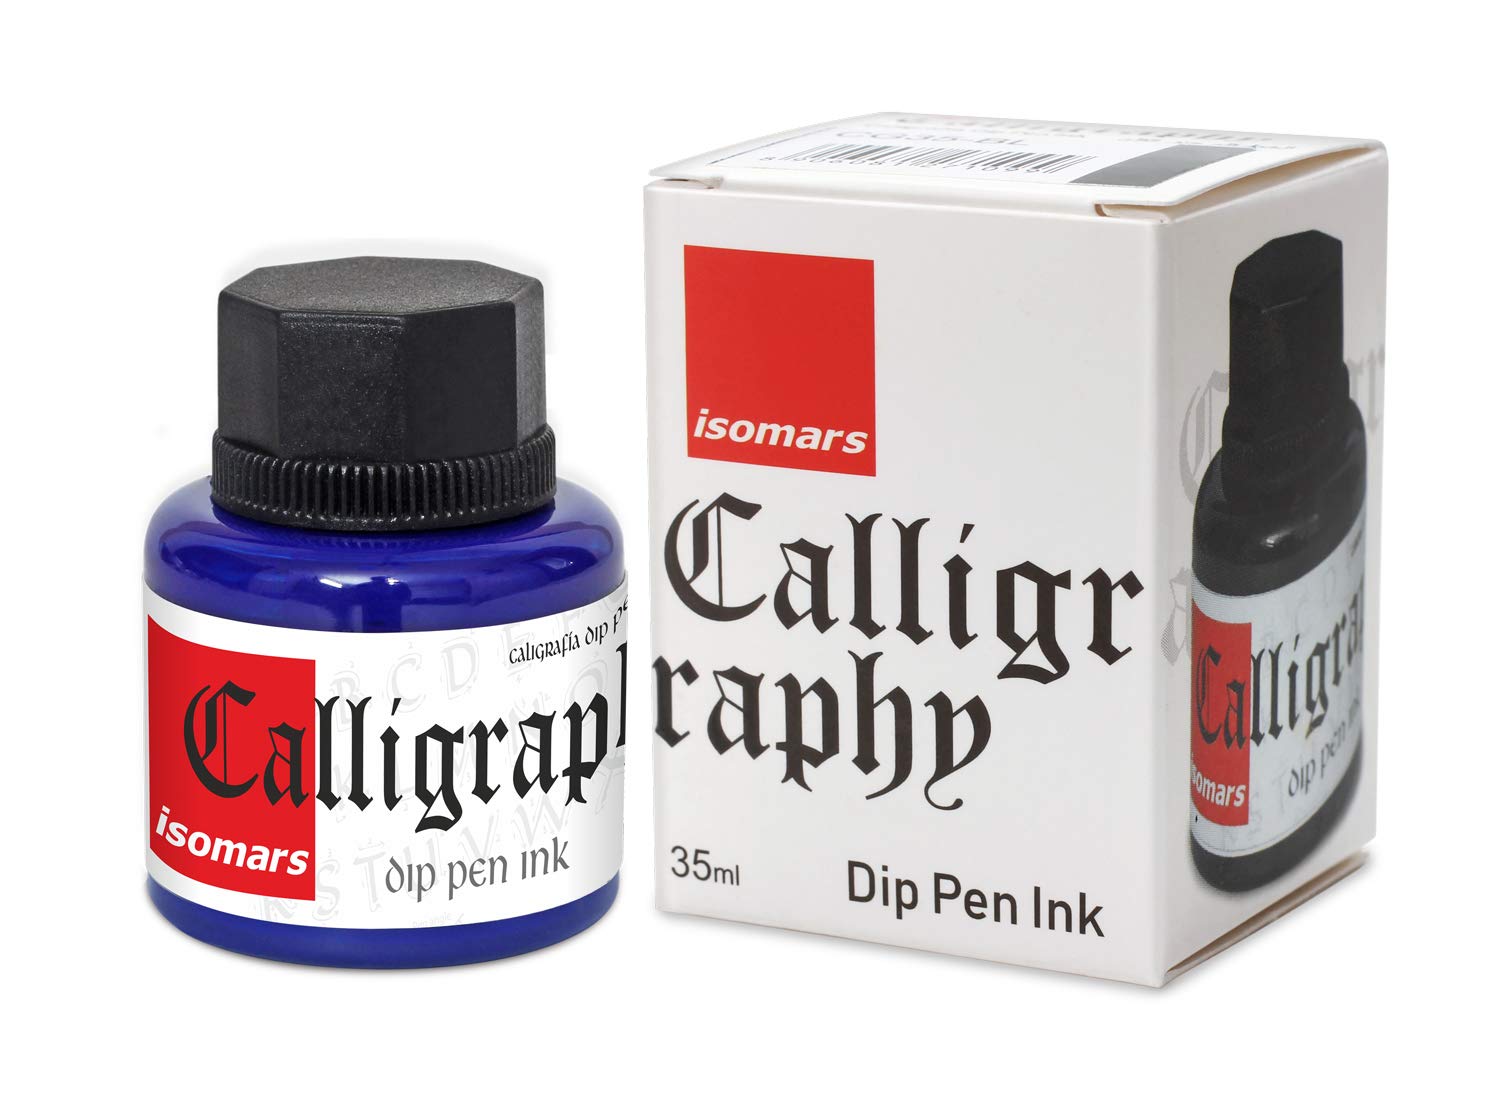 Isomars Calligraphy Dip Pen Inc. 35ml - Blue